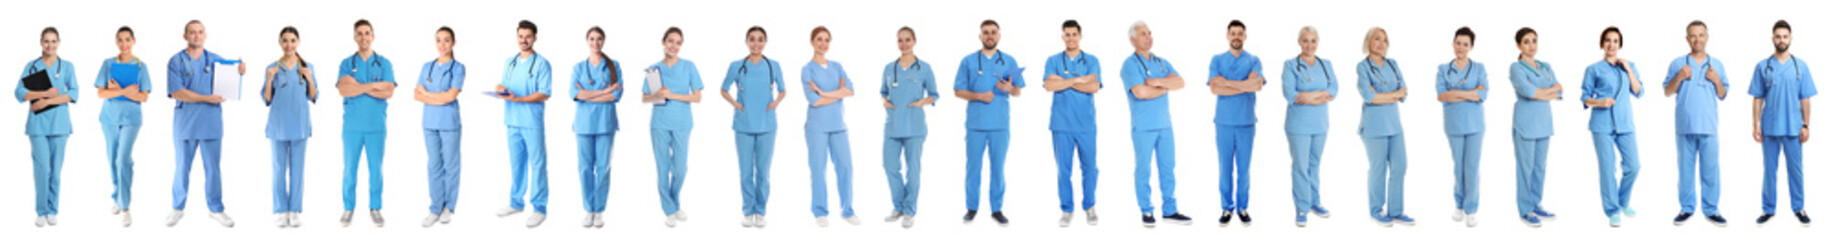 Collage von Menschen in Uniformen auf weißem Hintergrund. Medezinische Angestellte